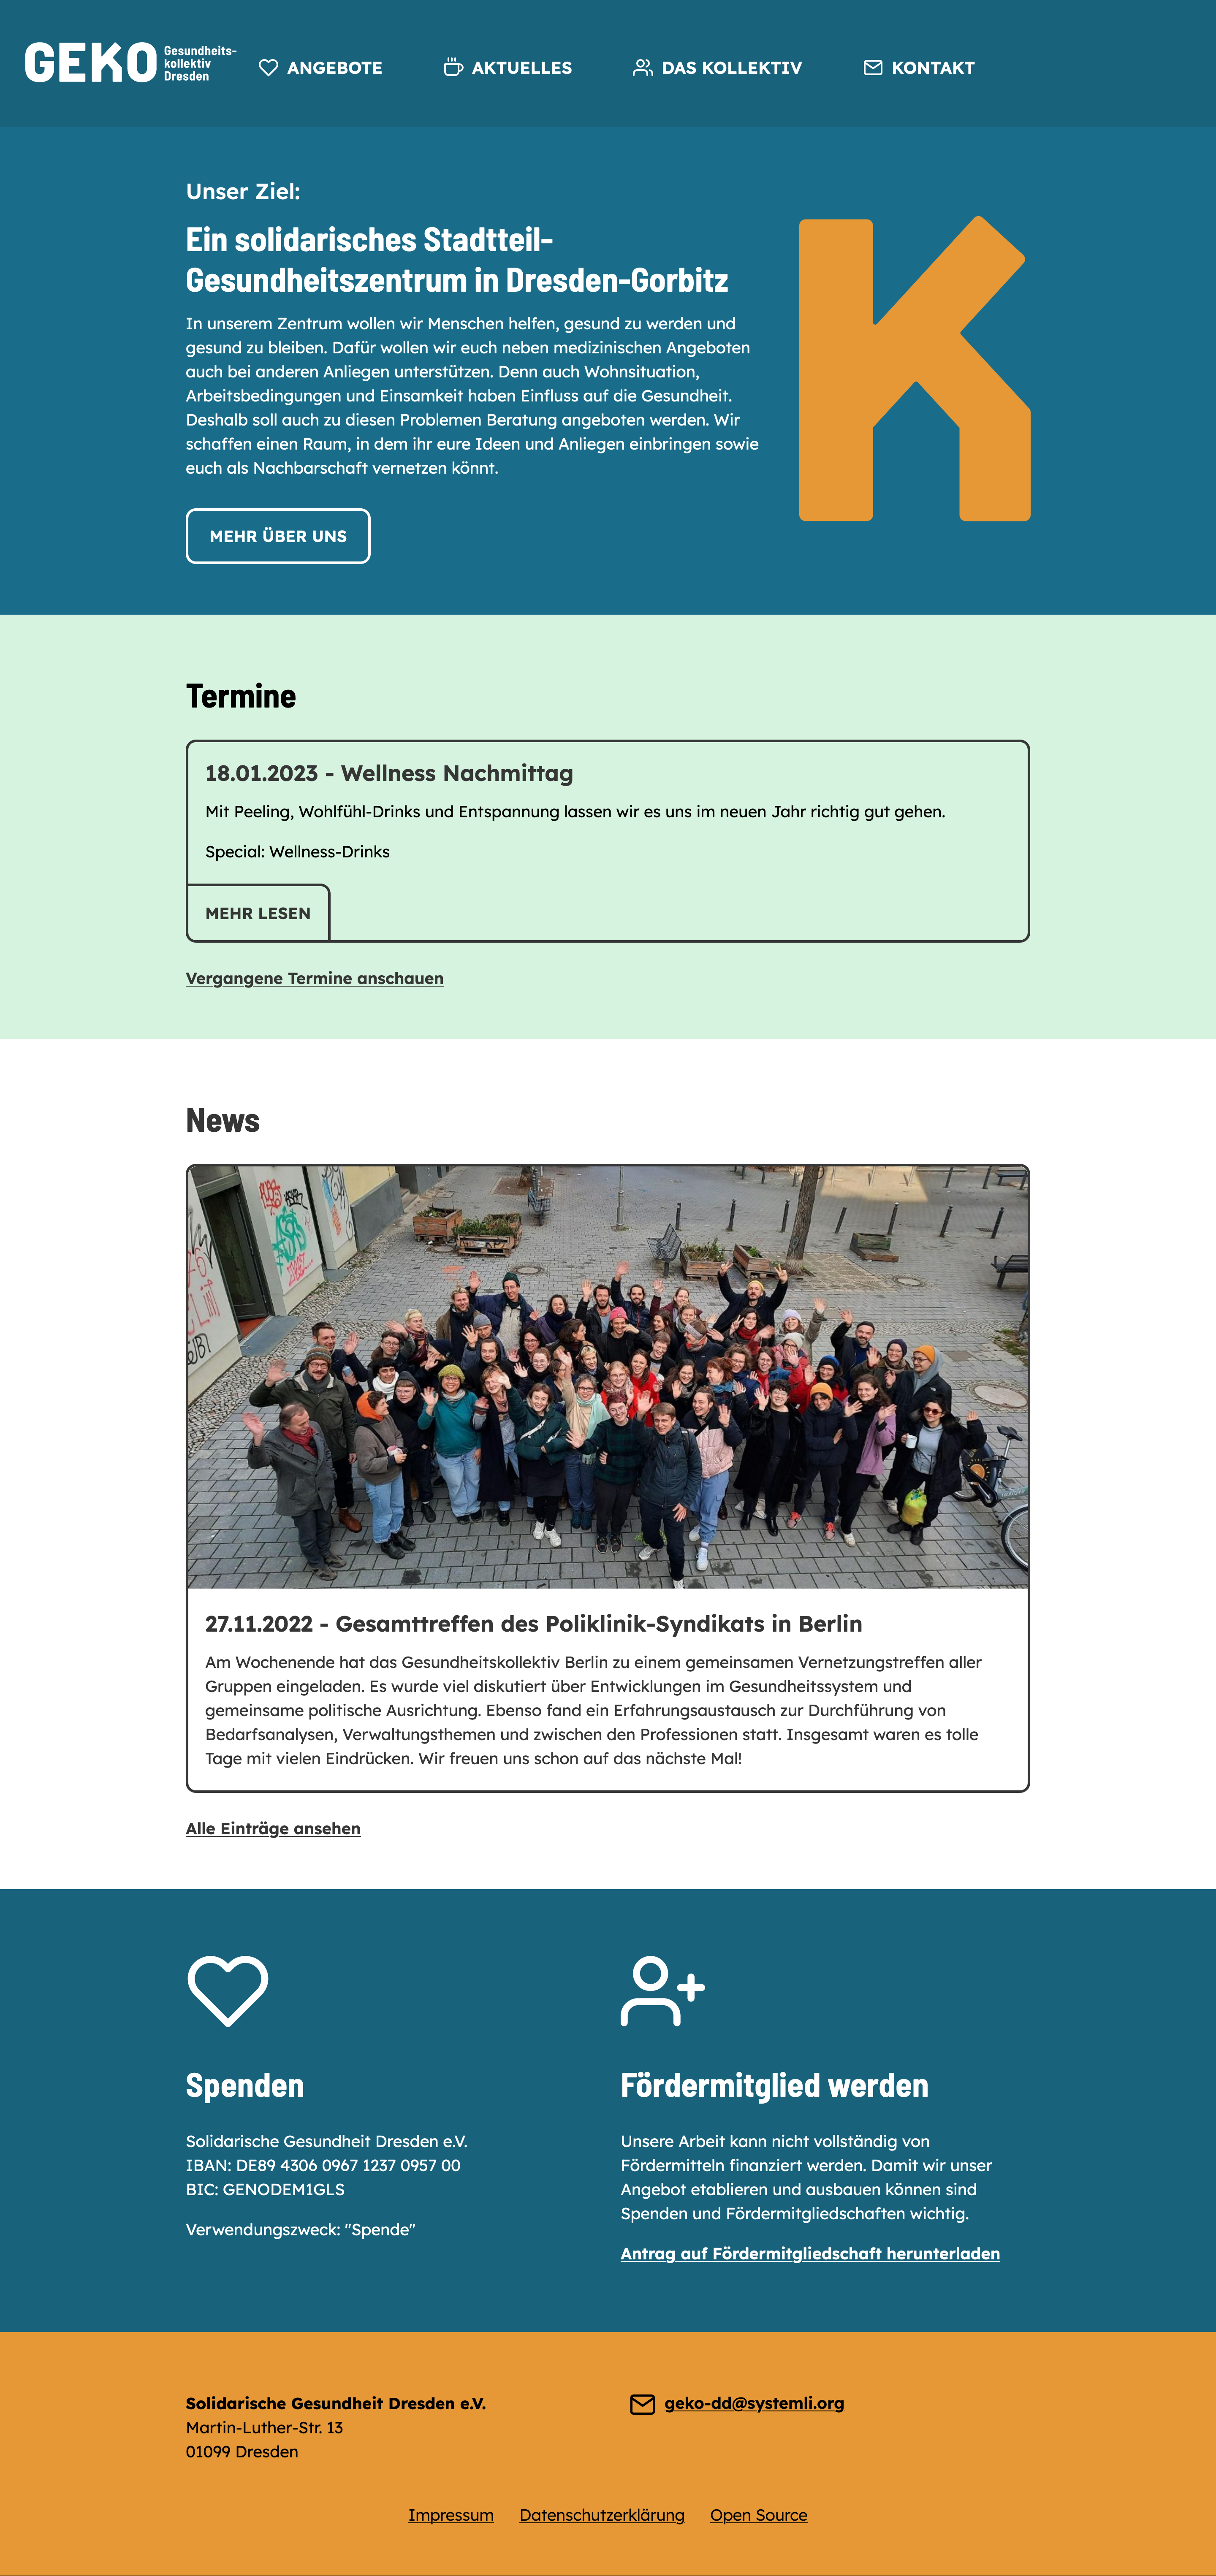 A screenshot of the website from the GEKO Dresden